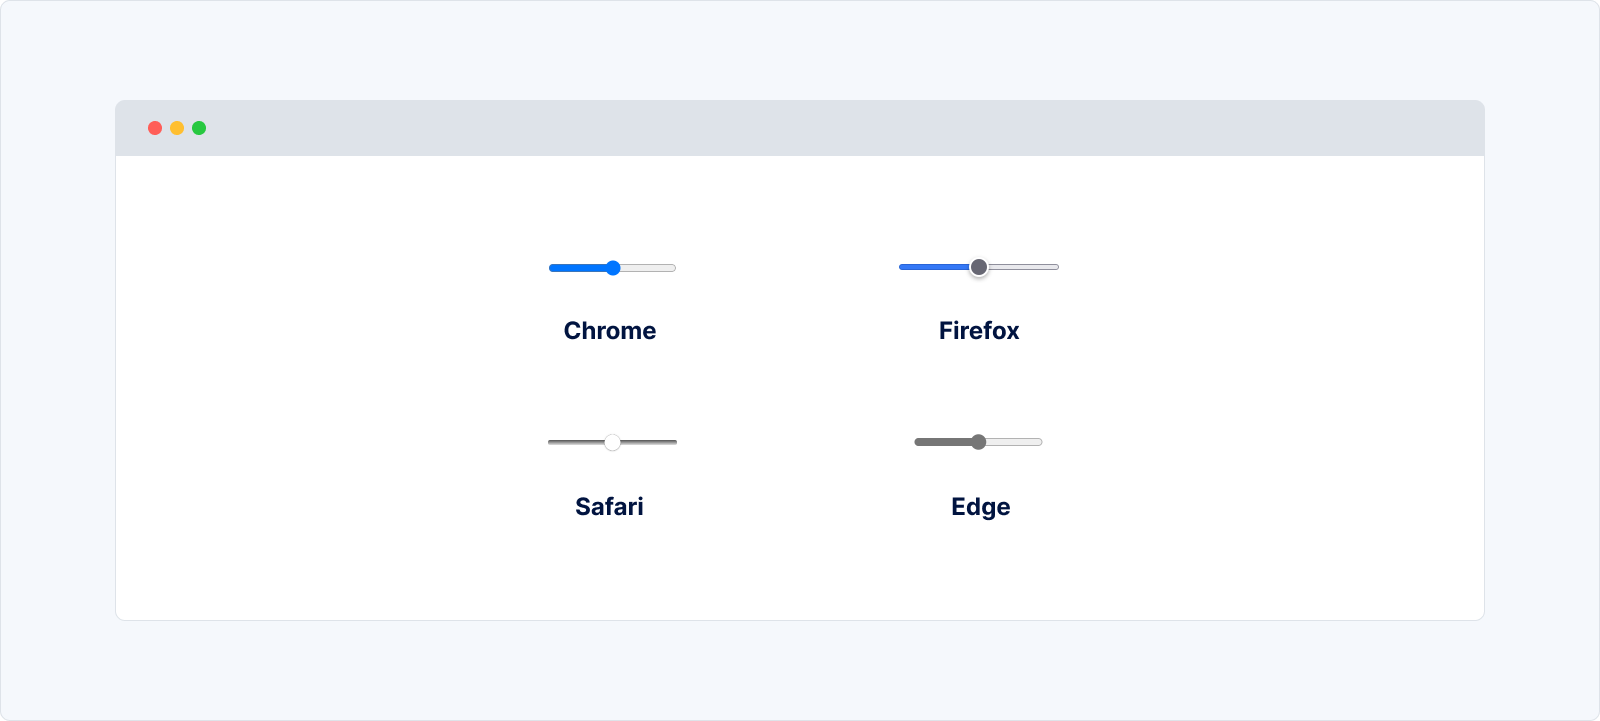 L'apparence par défaut d'un input de type range sur les différents navigateurs (Chrome, Forefox, Safari et Edge)